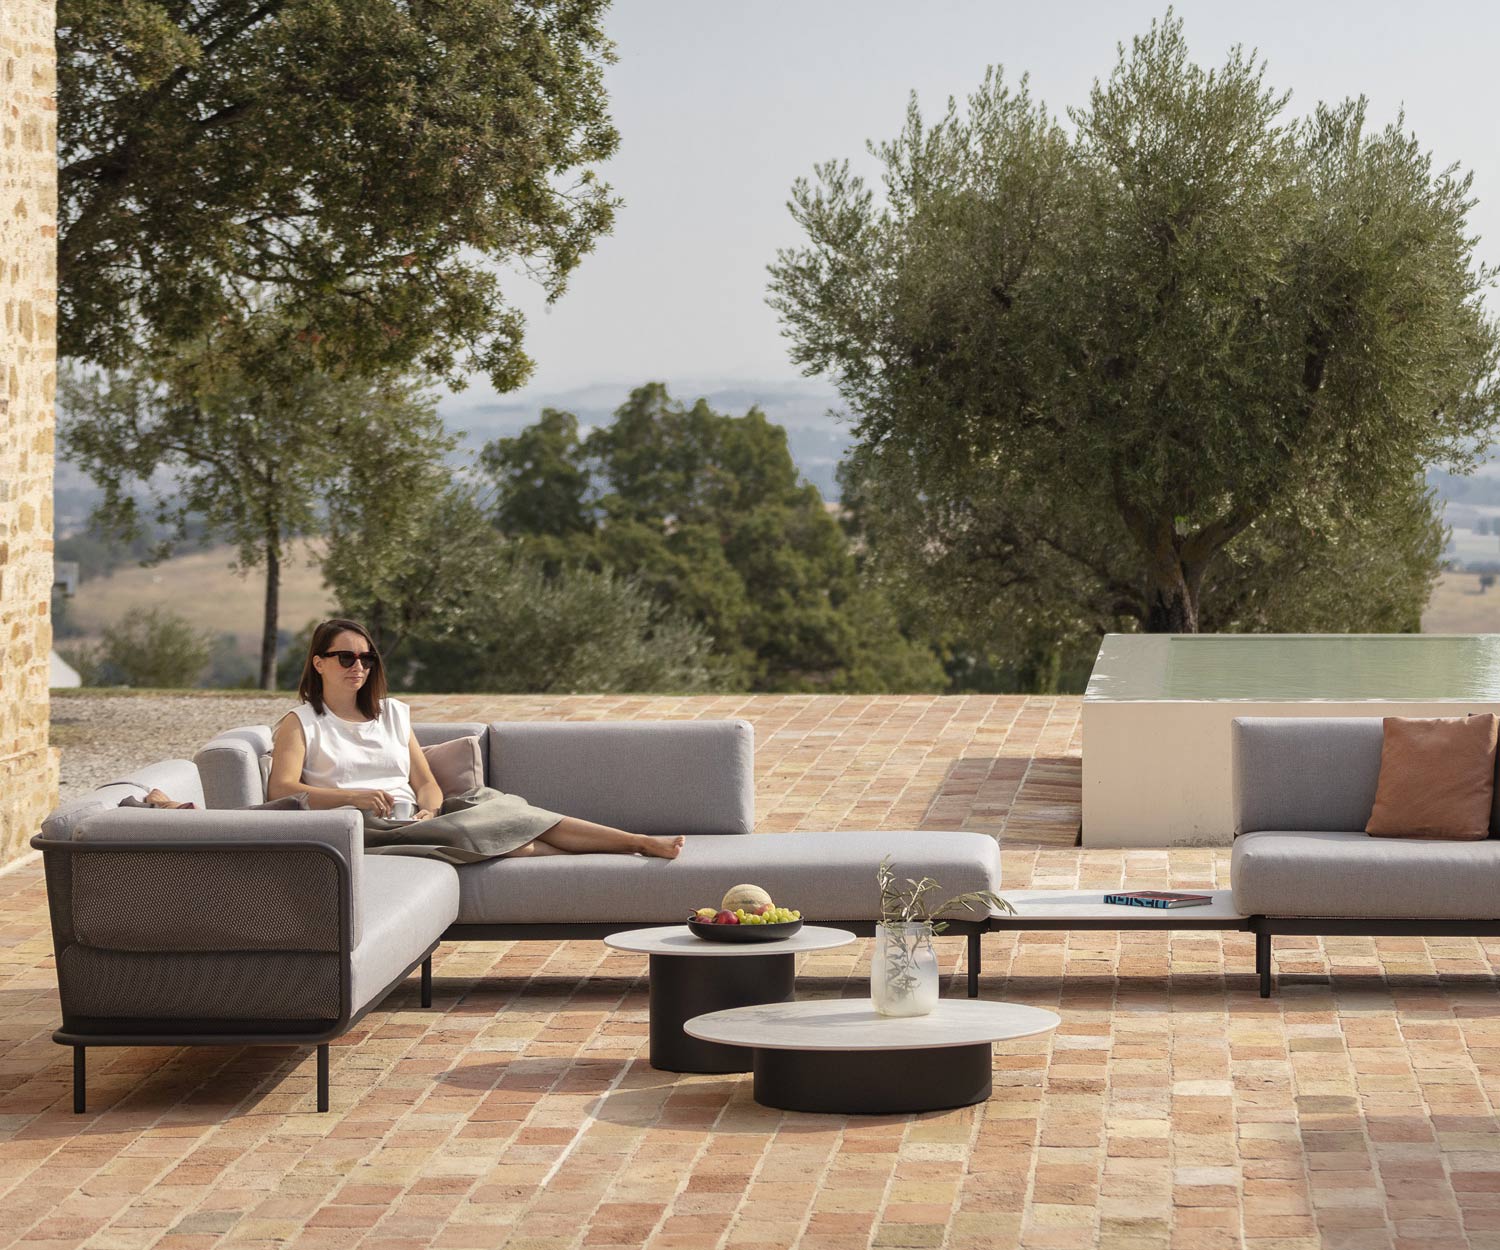 Branta Design Table d'appoint comme compagnon idéal pour les canapés sur la terrasse balcon véranda